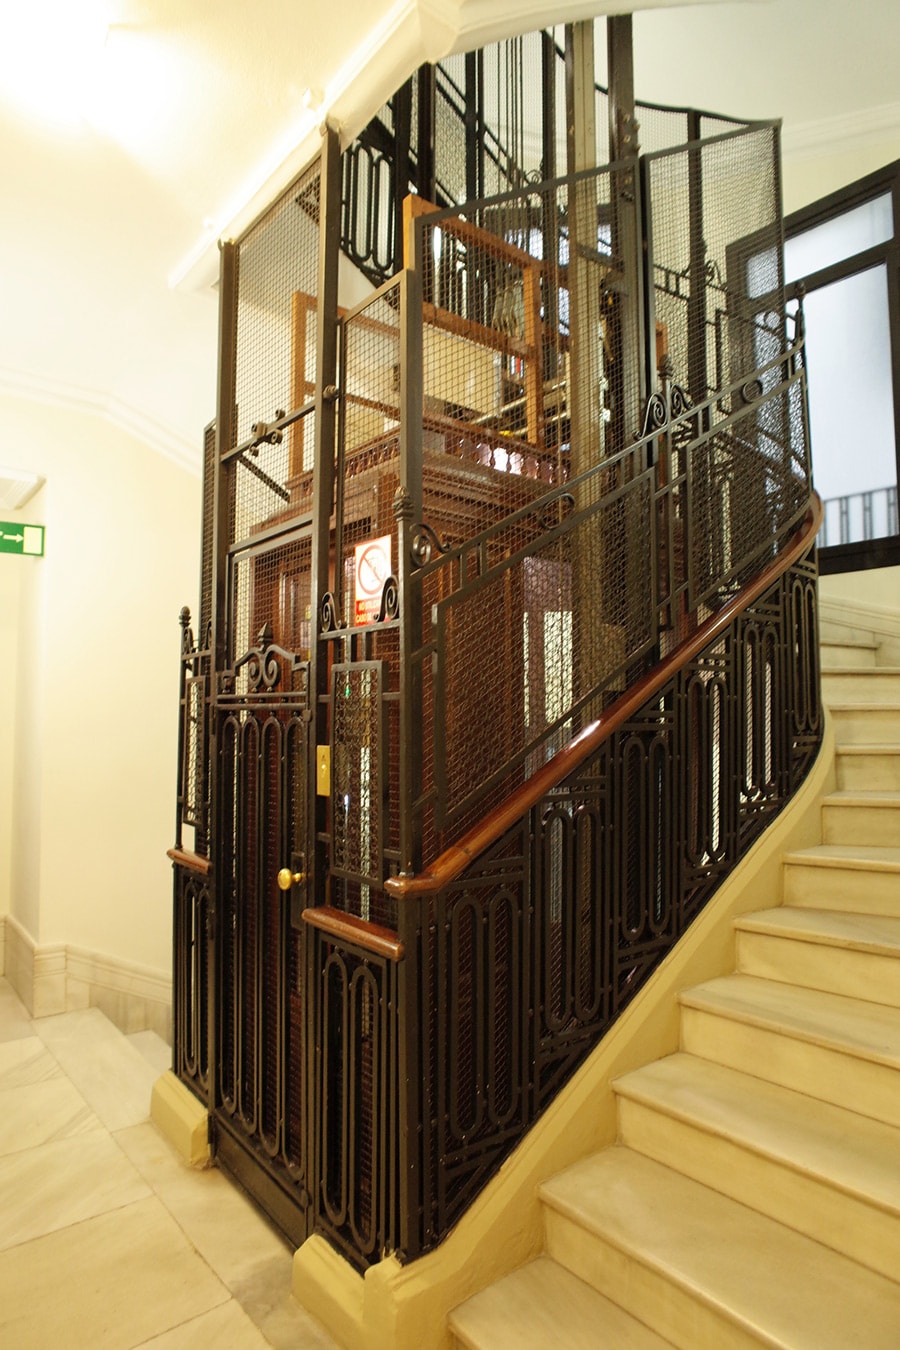 20世紀初頭に造られたエレベータが現役で動いている。